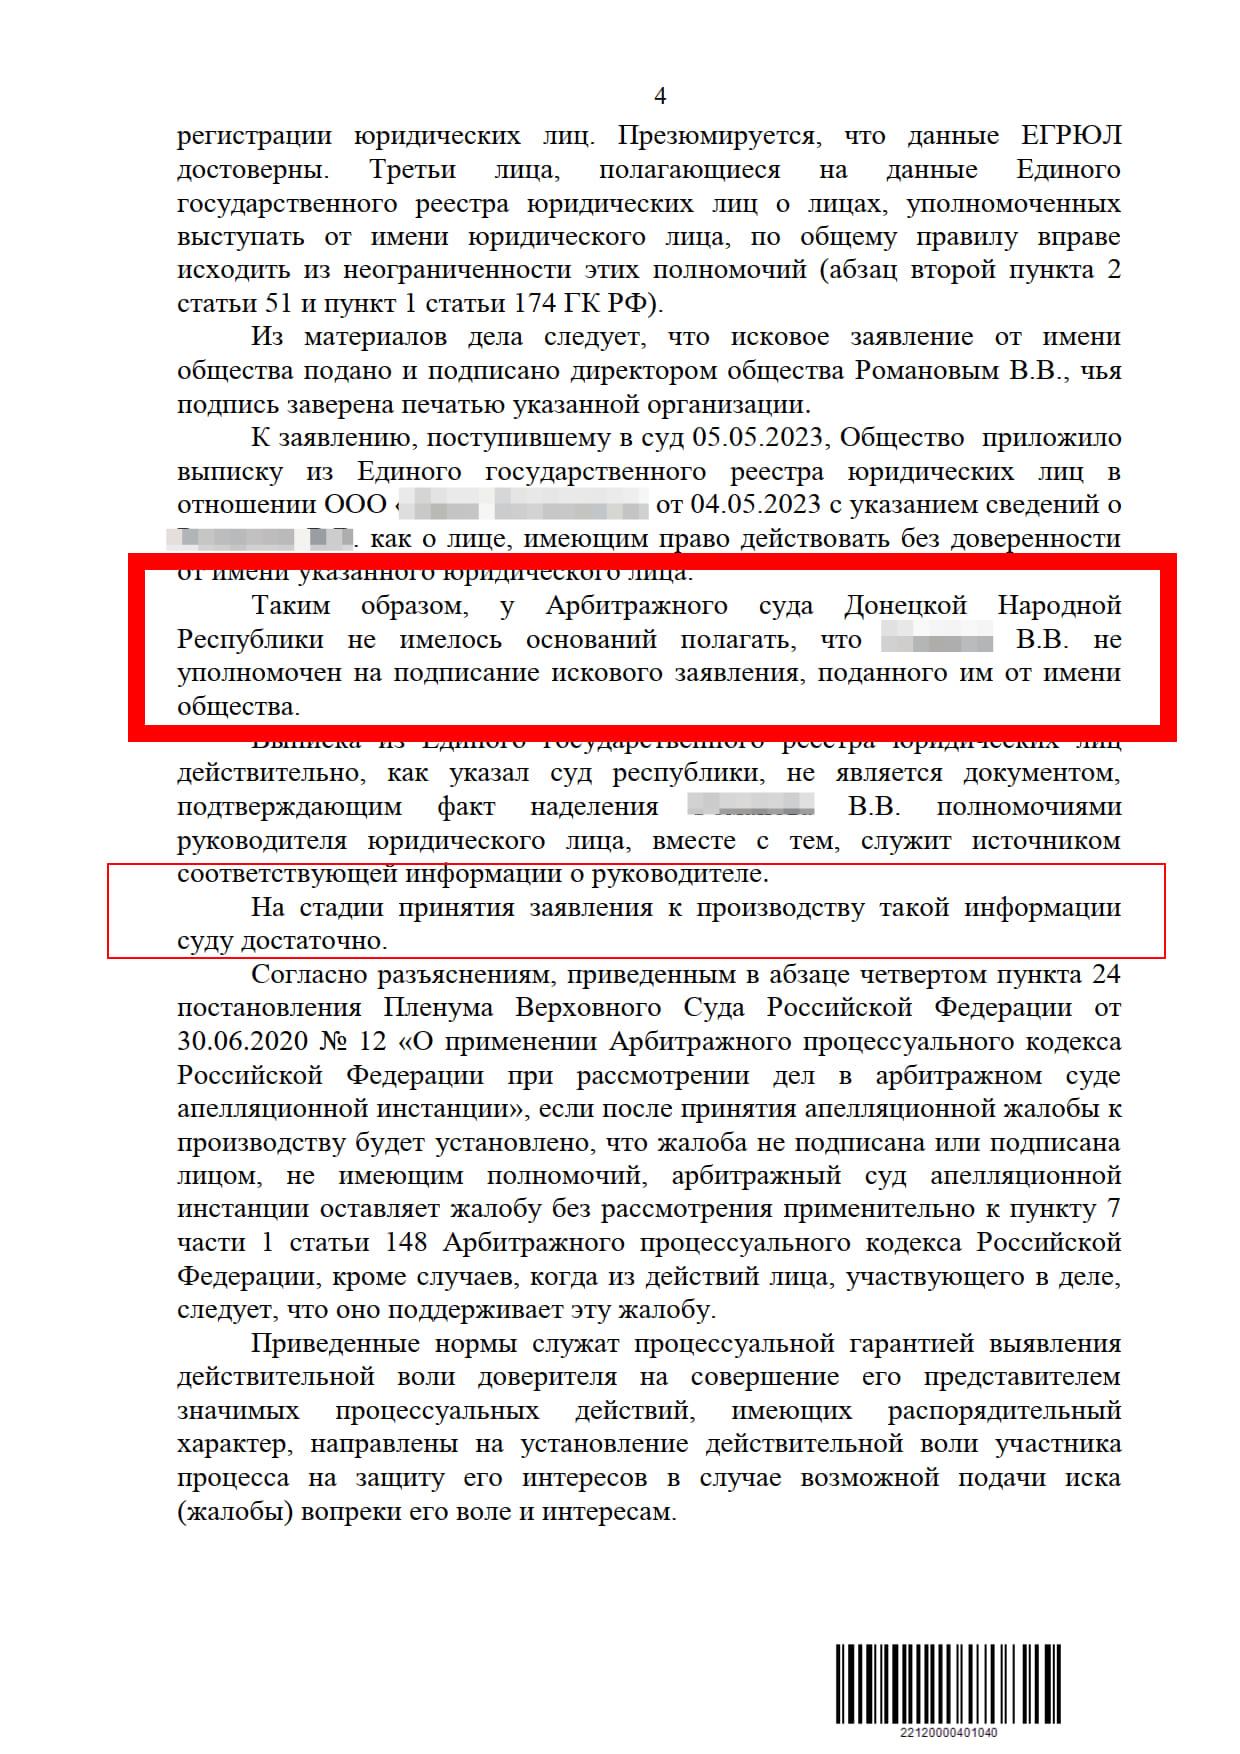 решения судов ДНР